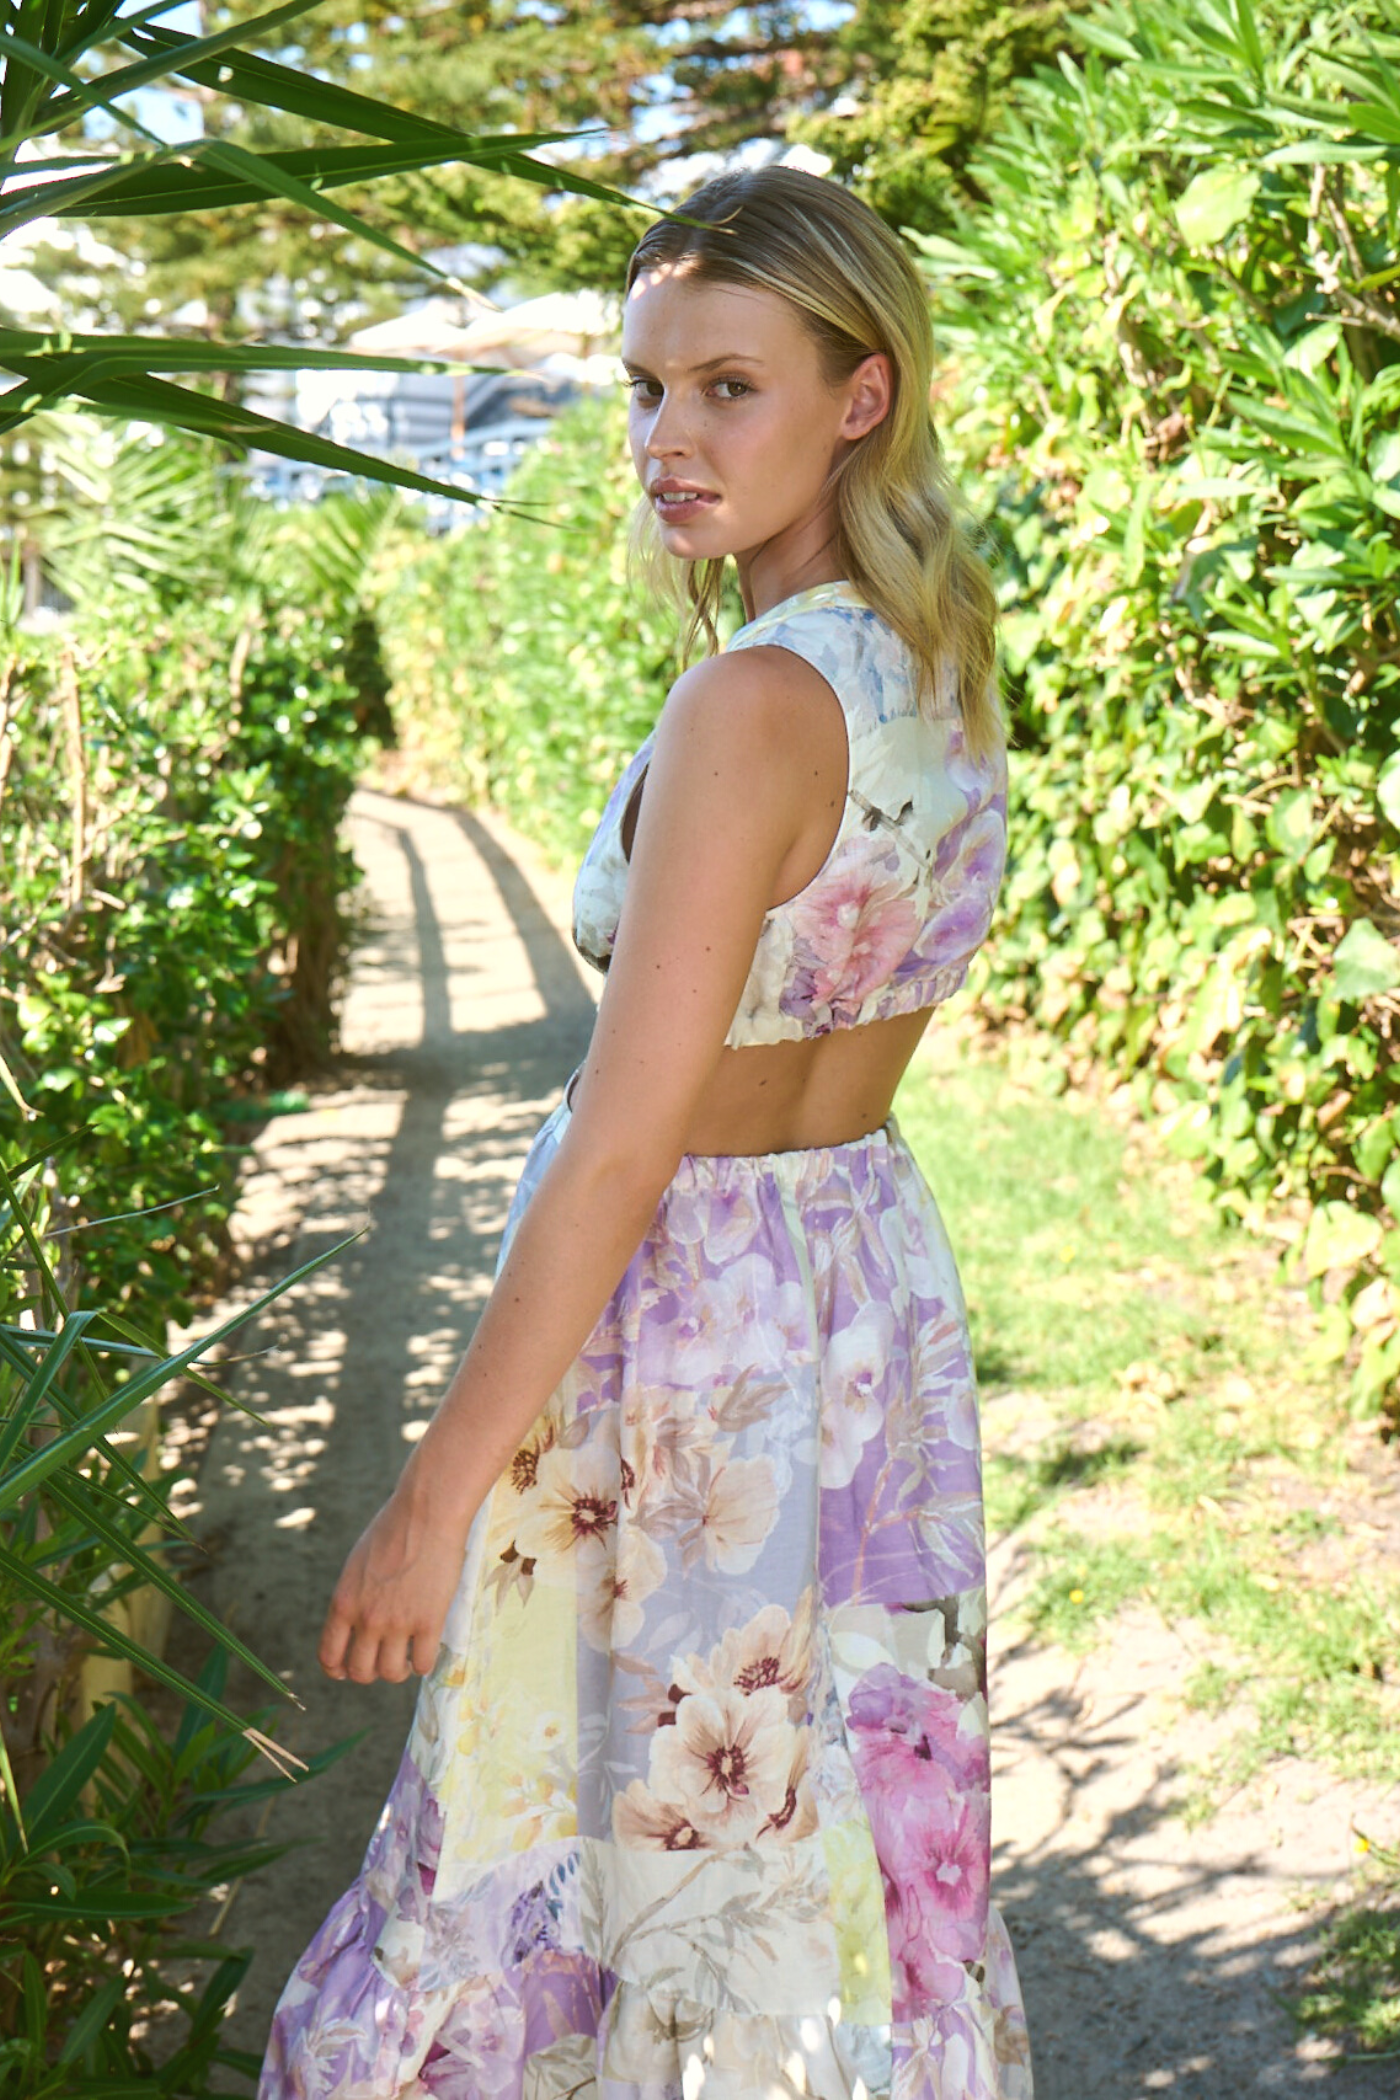 model wearing long backless dress in garden